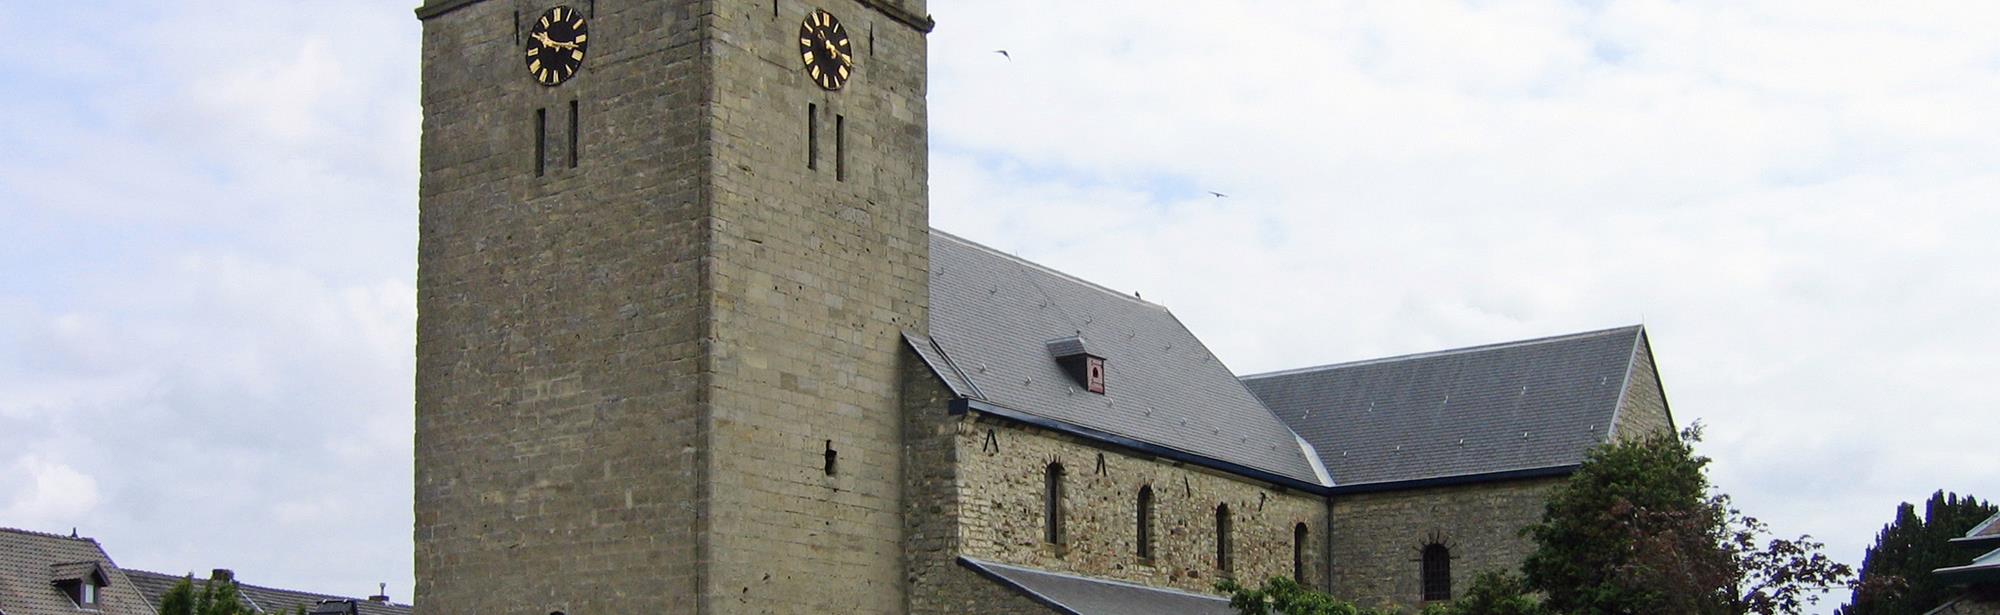 Wachttoren Heilige Remigiuskerk